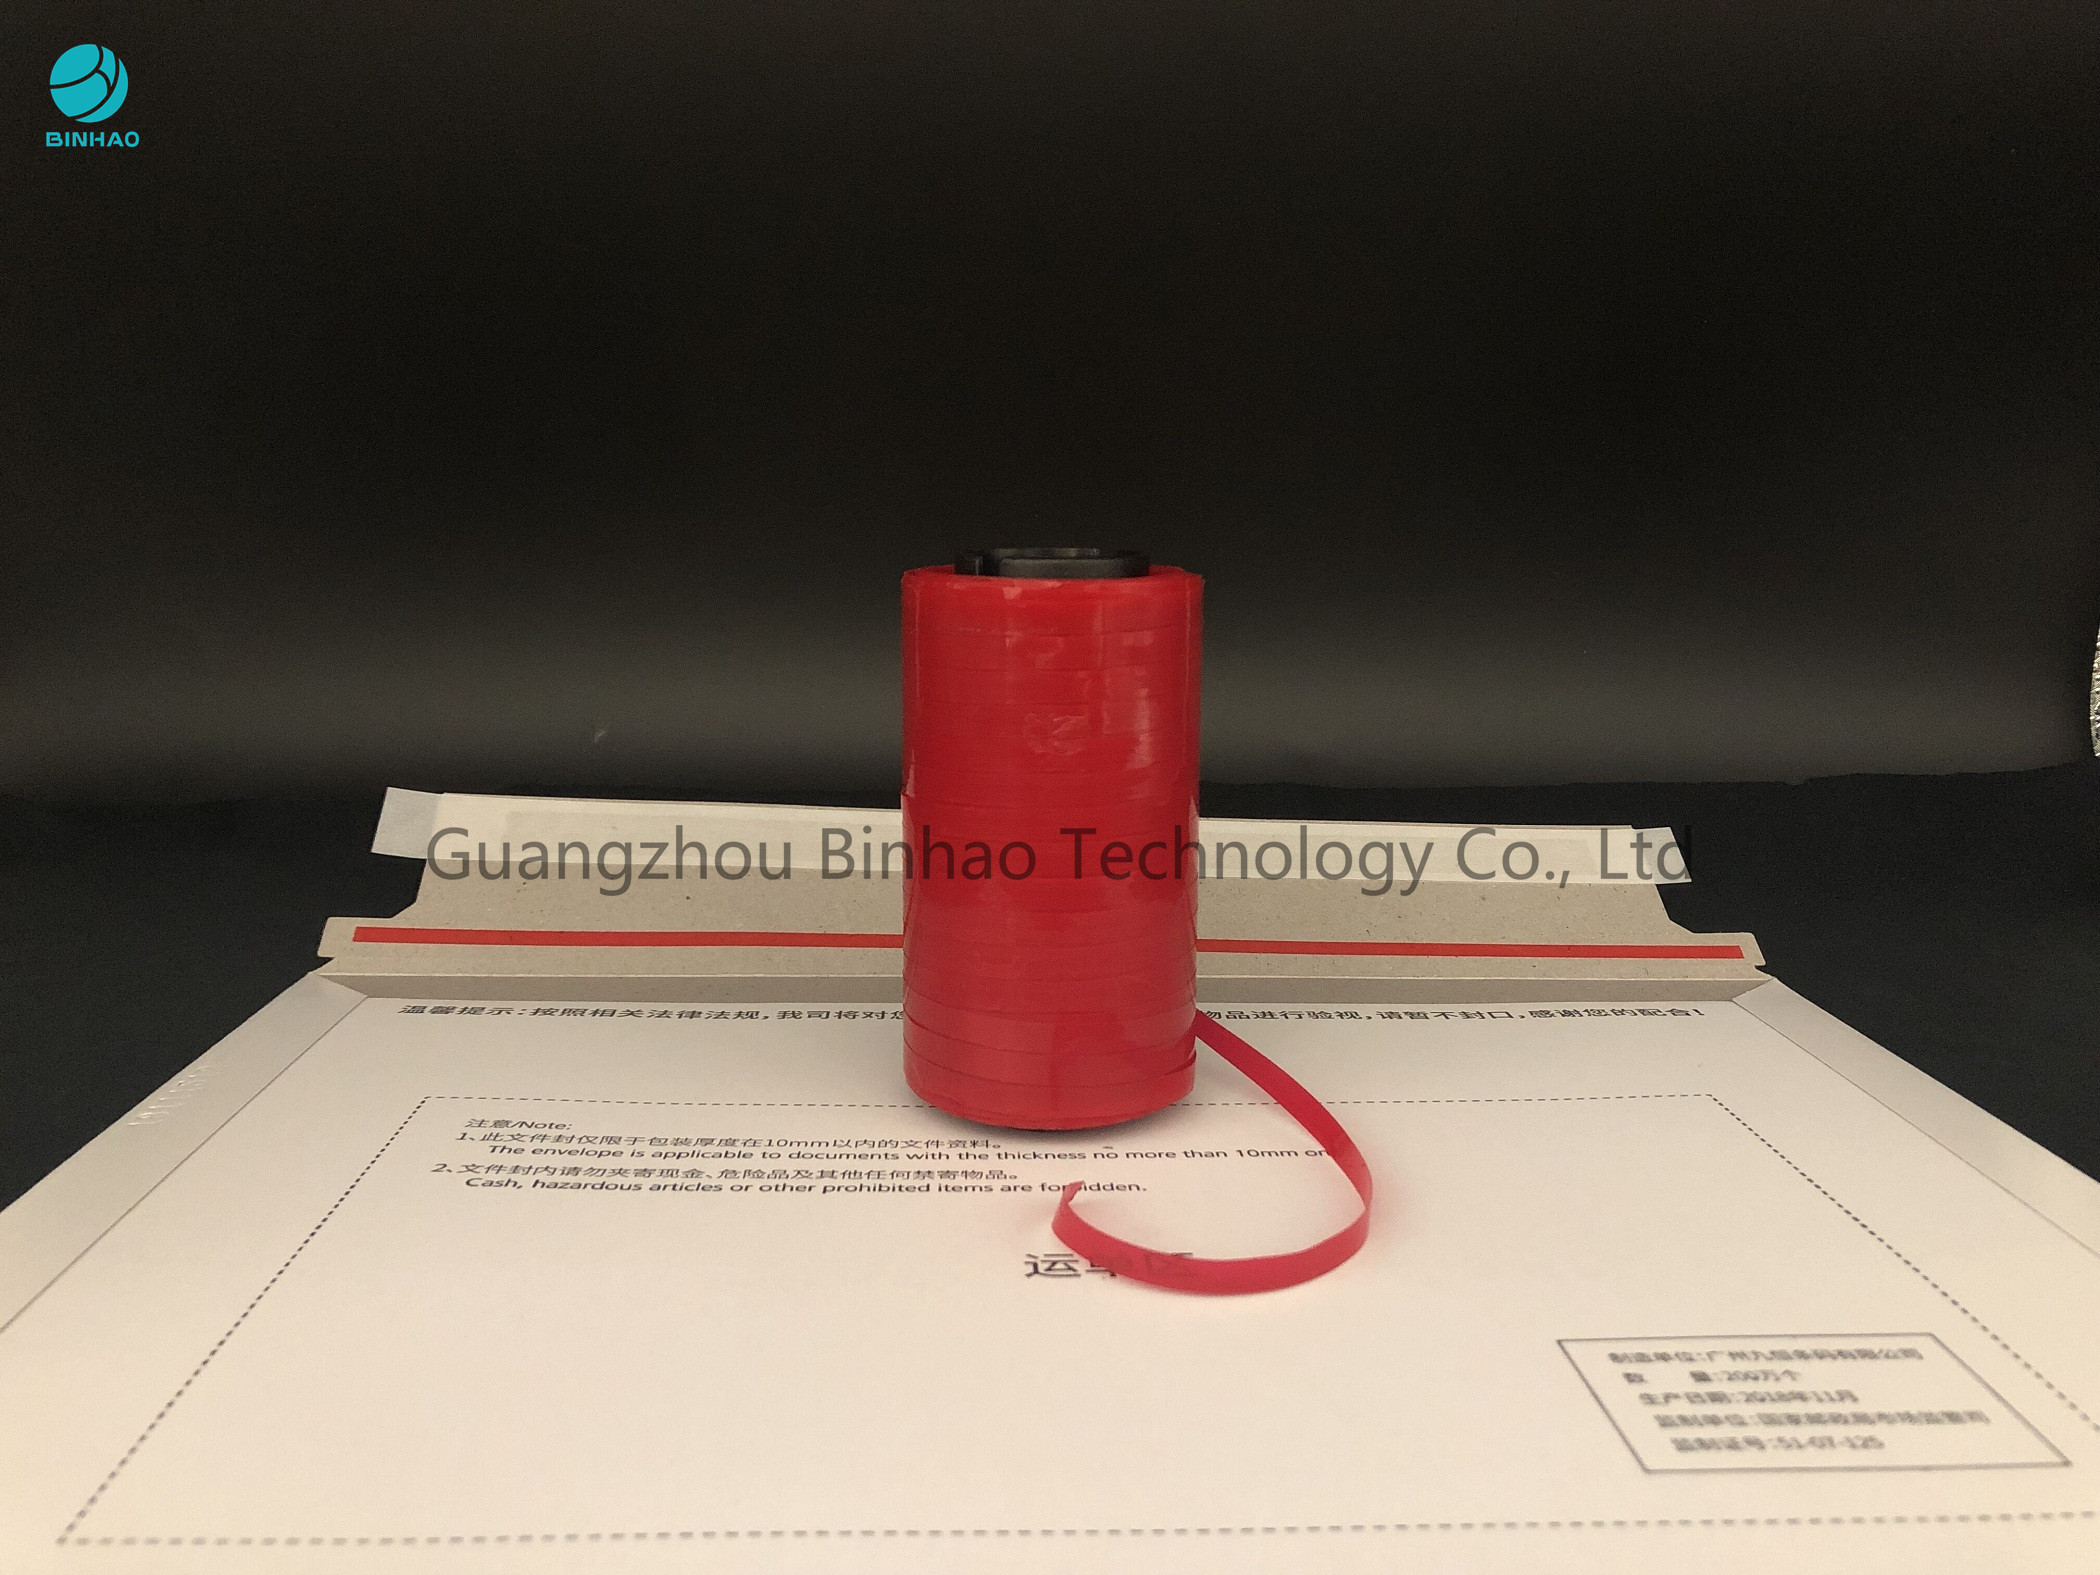 Samoprzylepna czerwona taśma MOPP o grubości 4 mm do pakowania w worki kurierskie i łatwa w otwieraniu